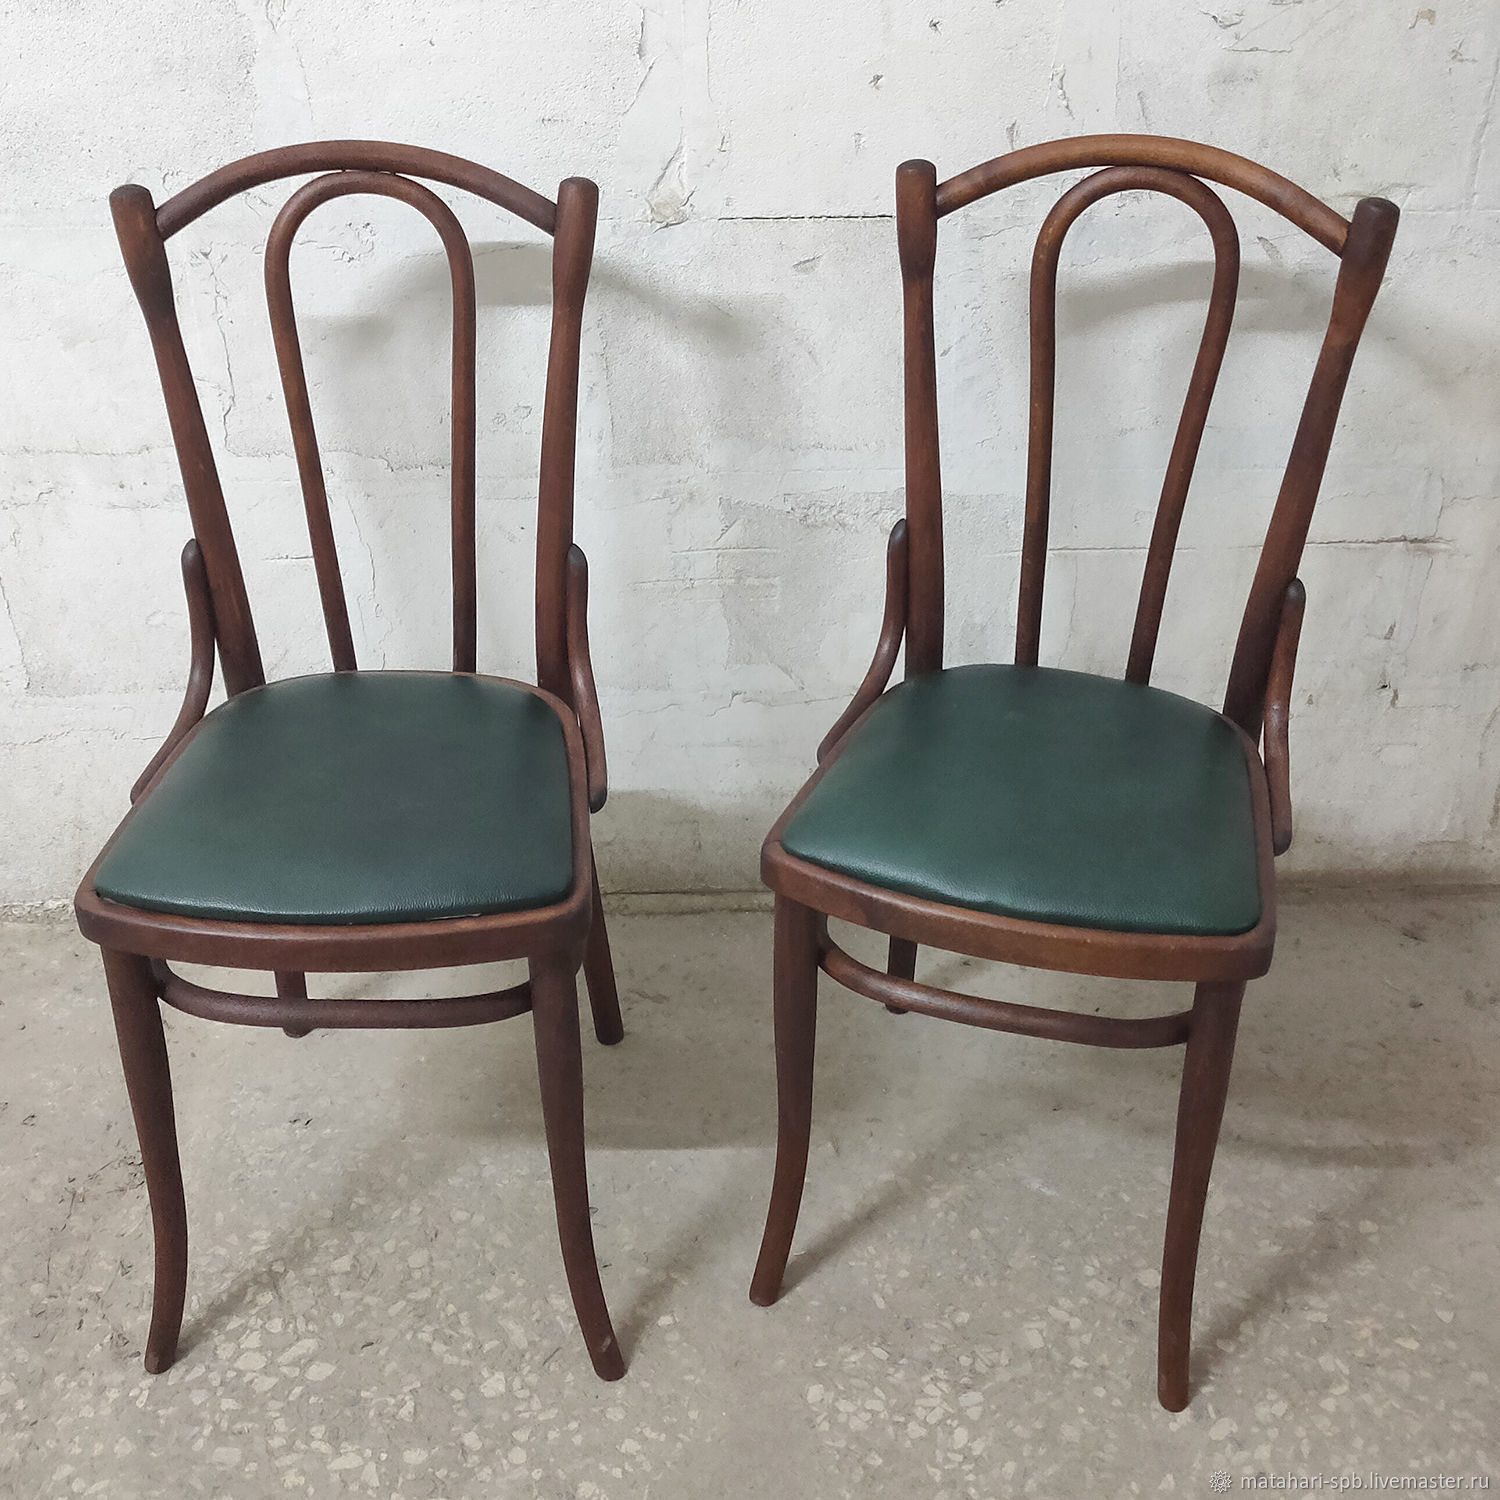 Старые венские стулья были главной достопримечательностью в маленьком дедушкином доме